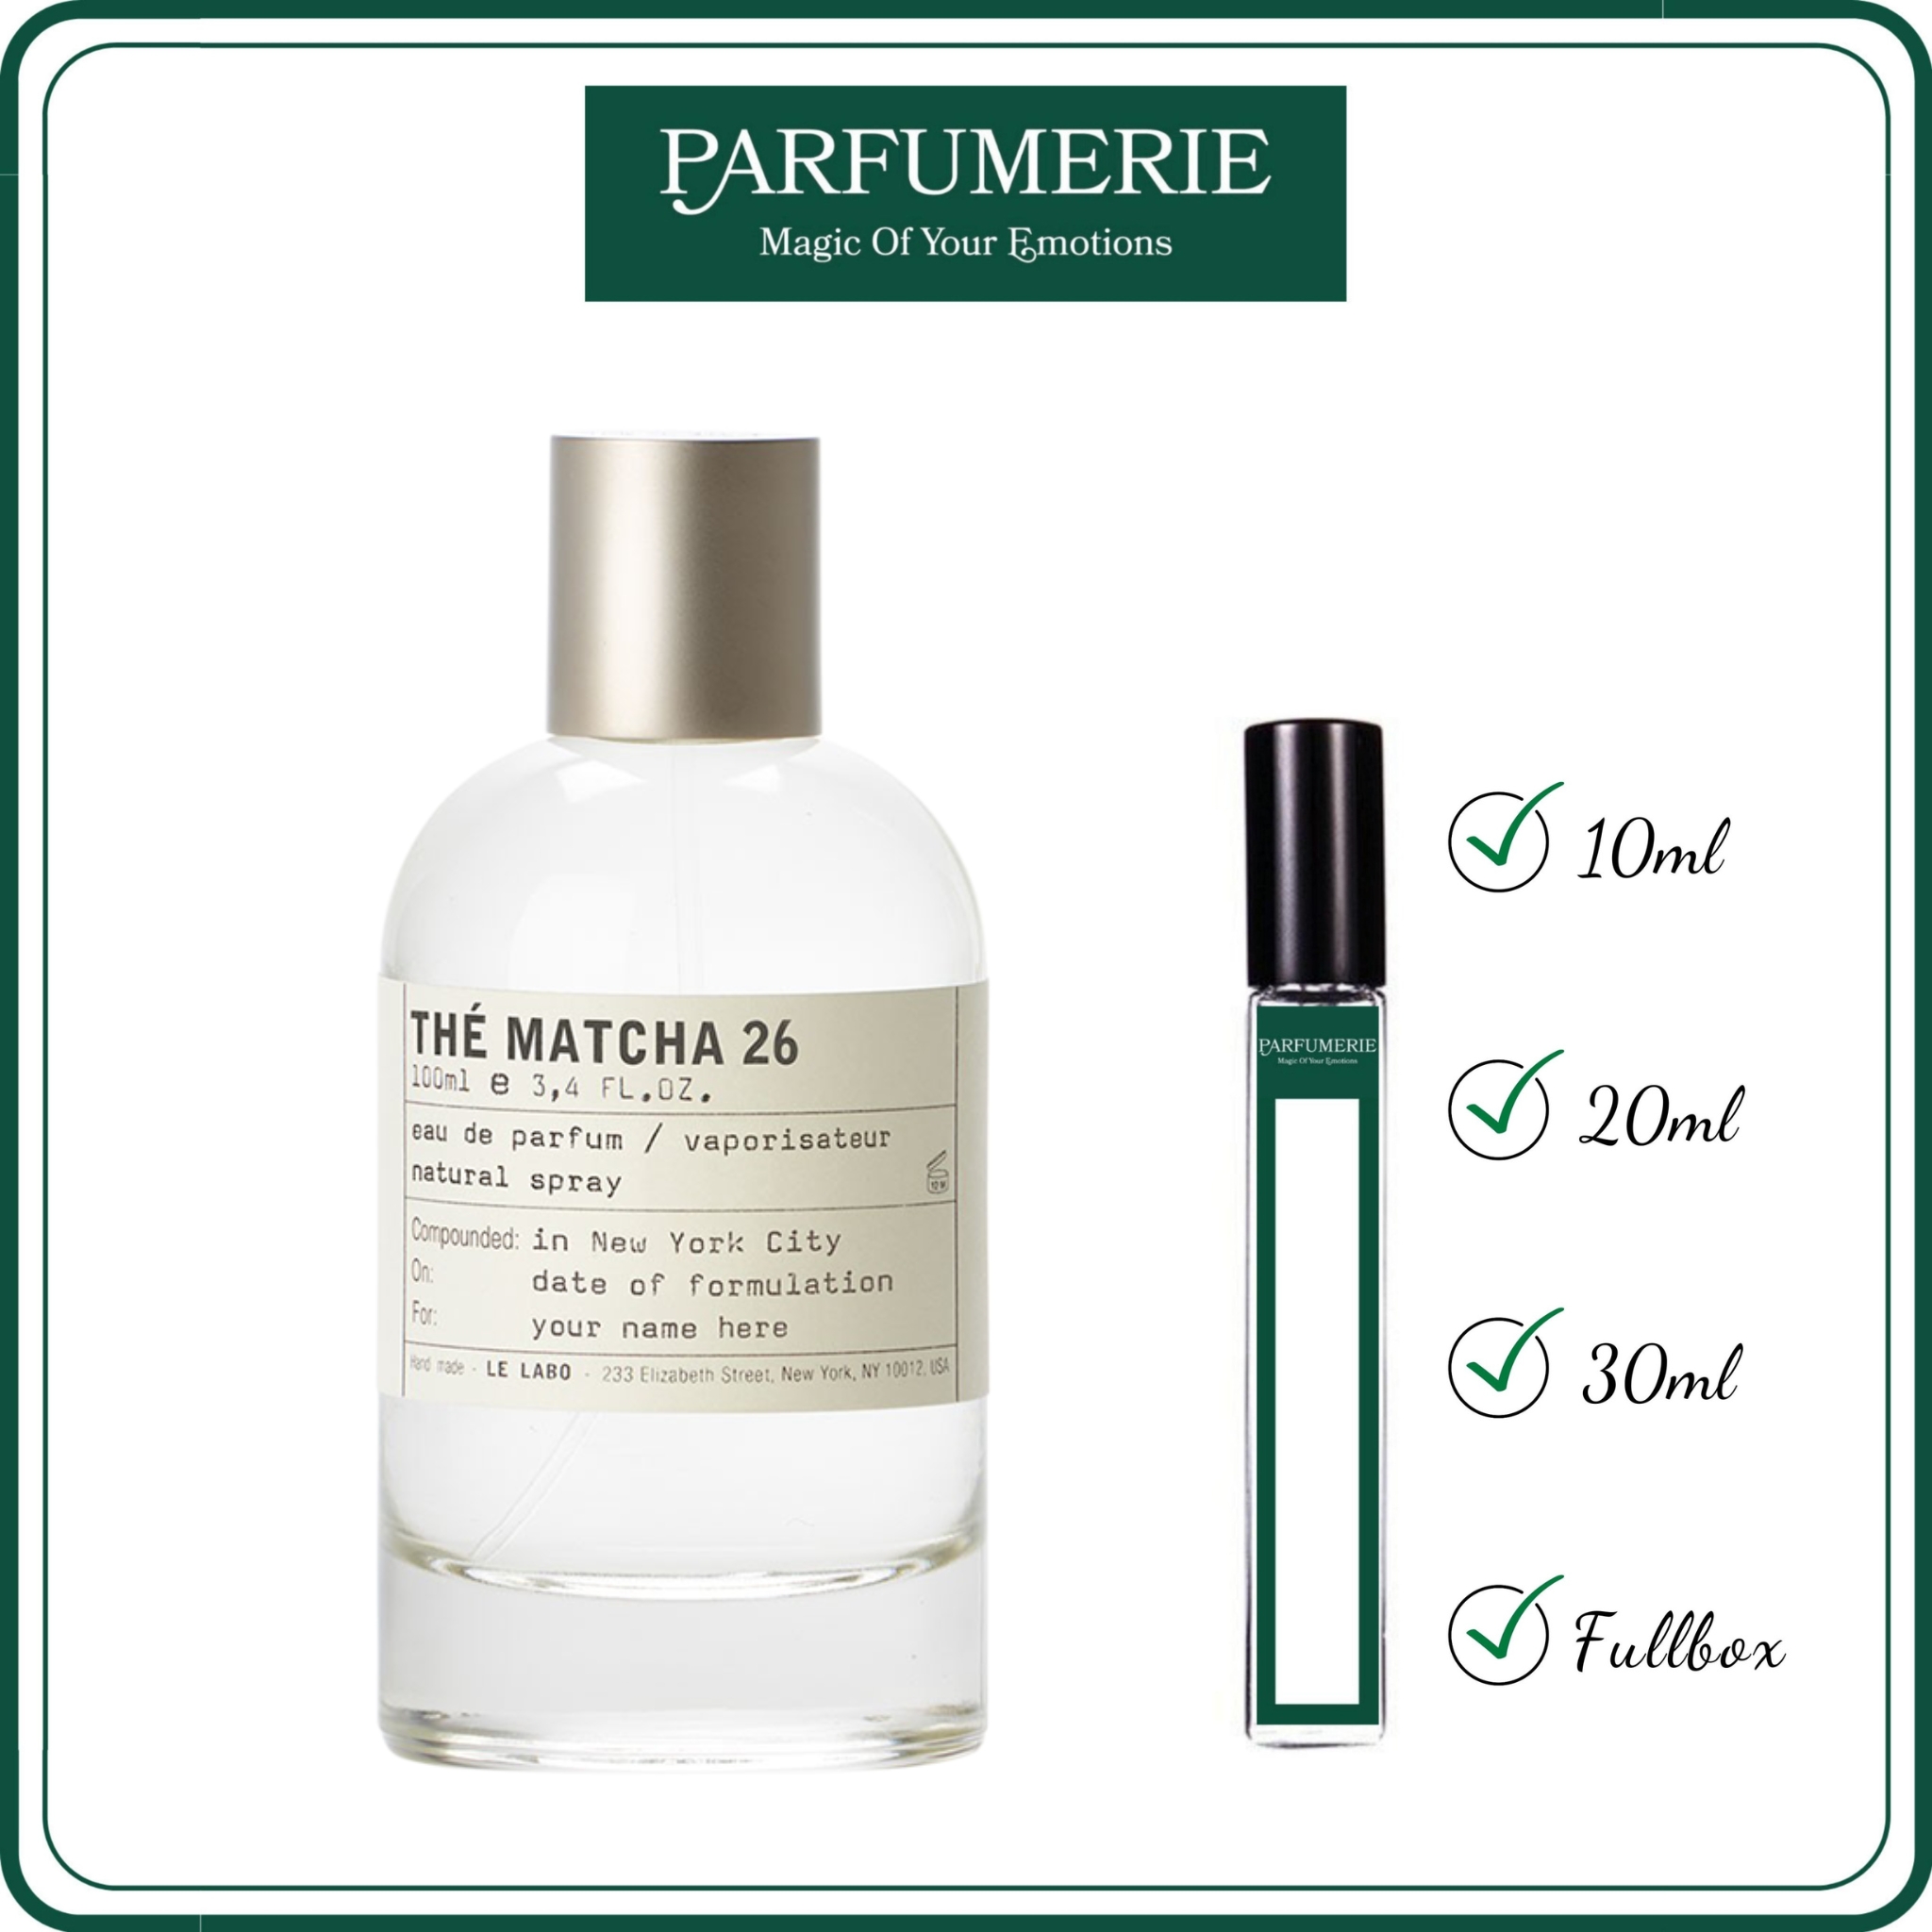 Nước hoa chiết Le Labo Thé Matcha 26 từ Parfumerie được chiết ra 100% từ chai gốc chính hãng